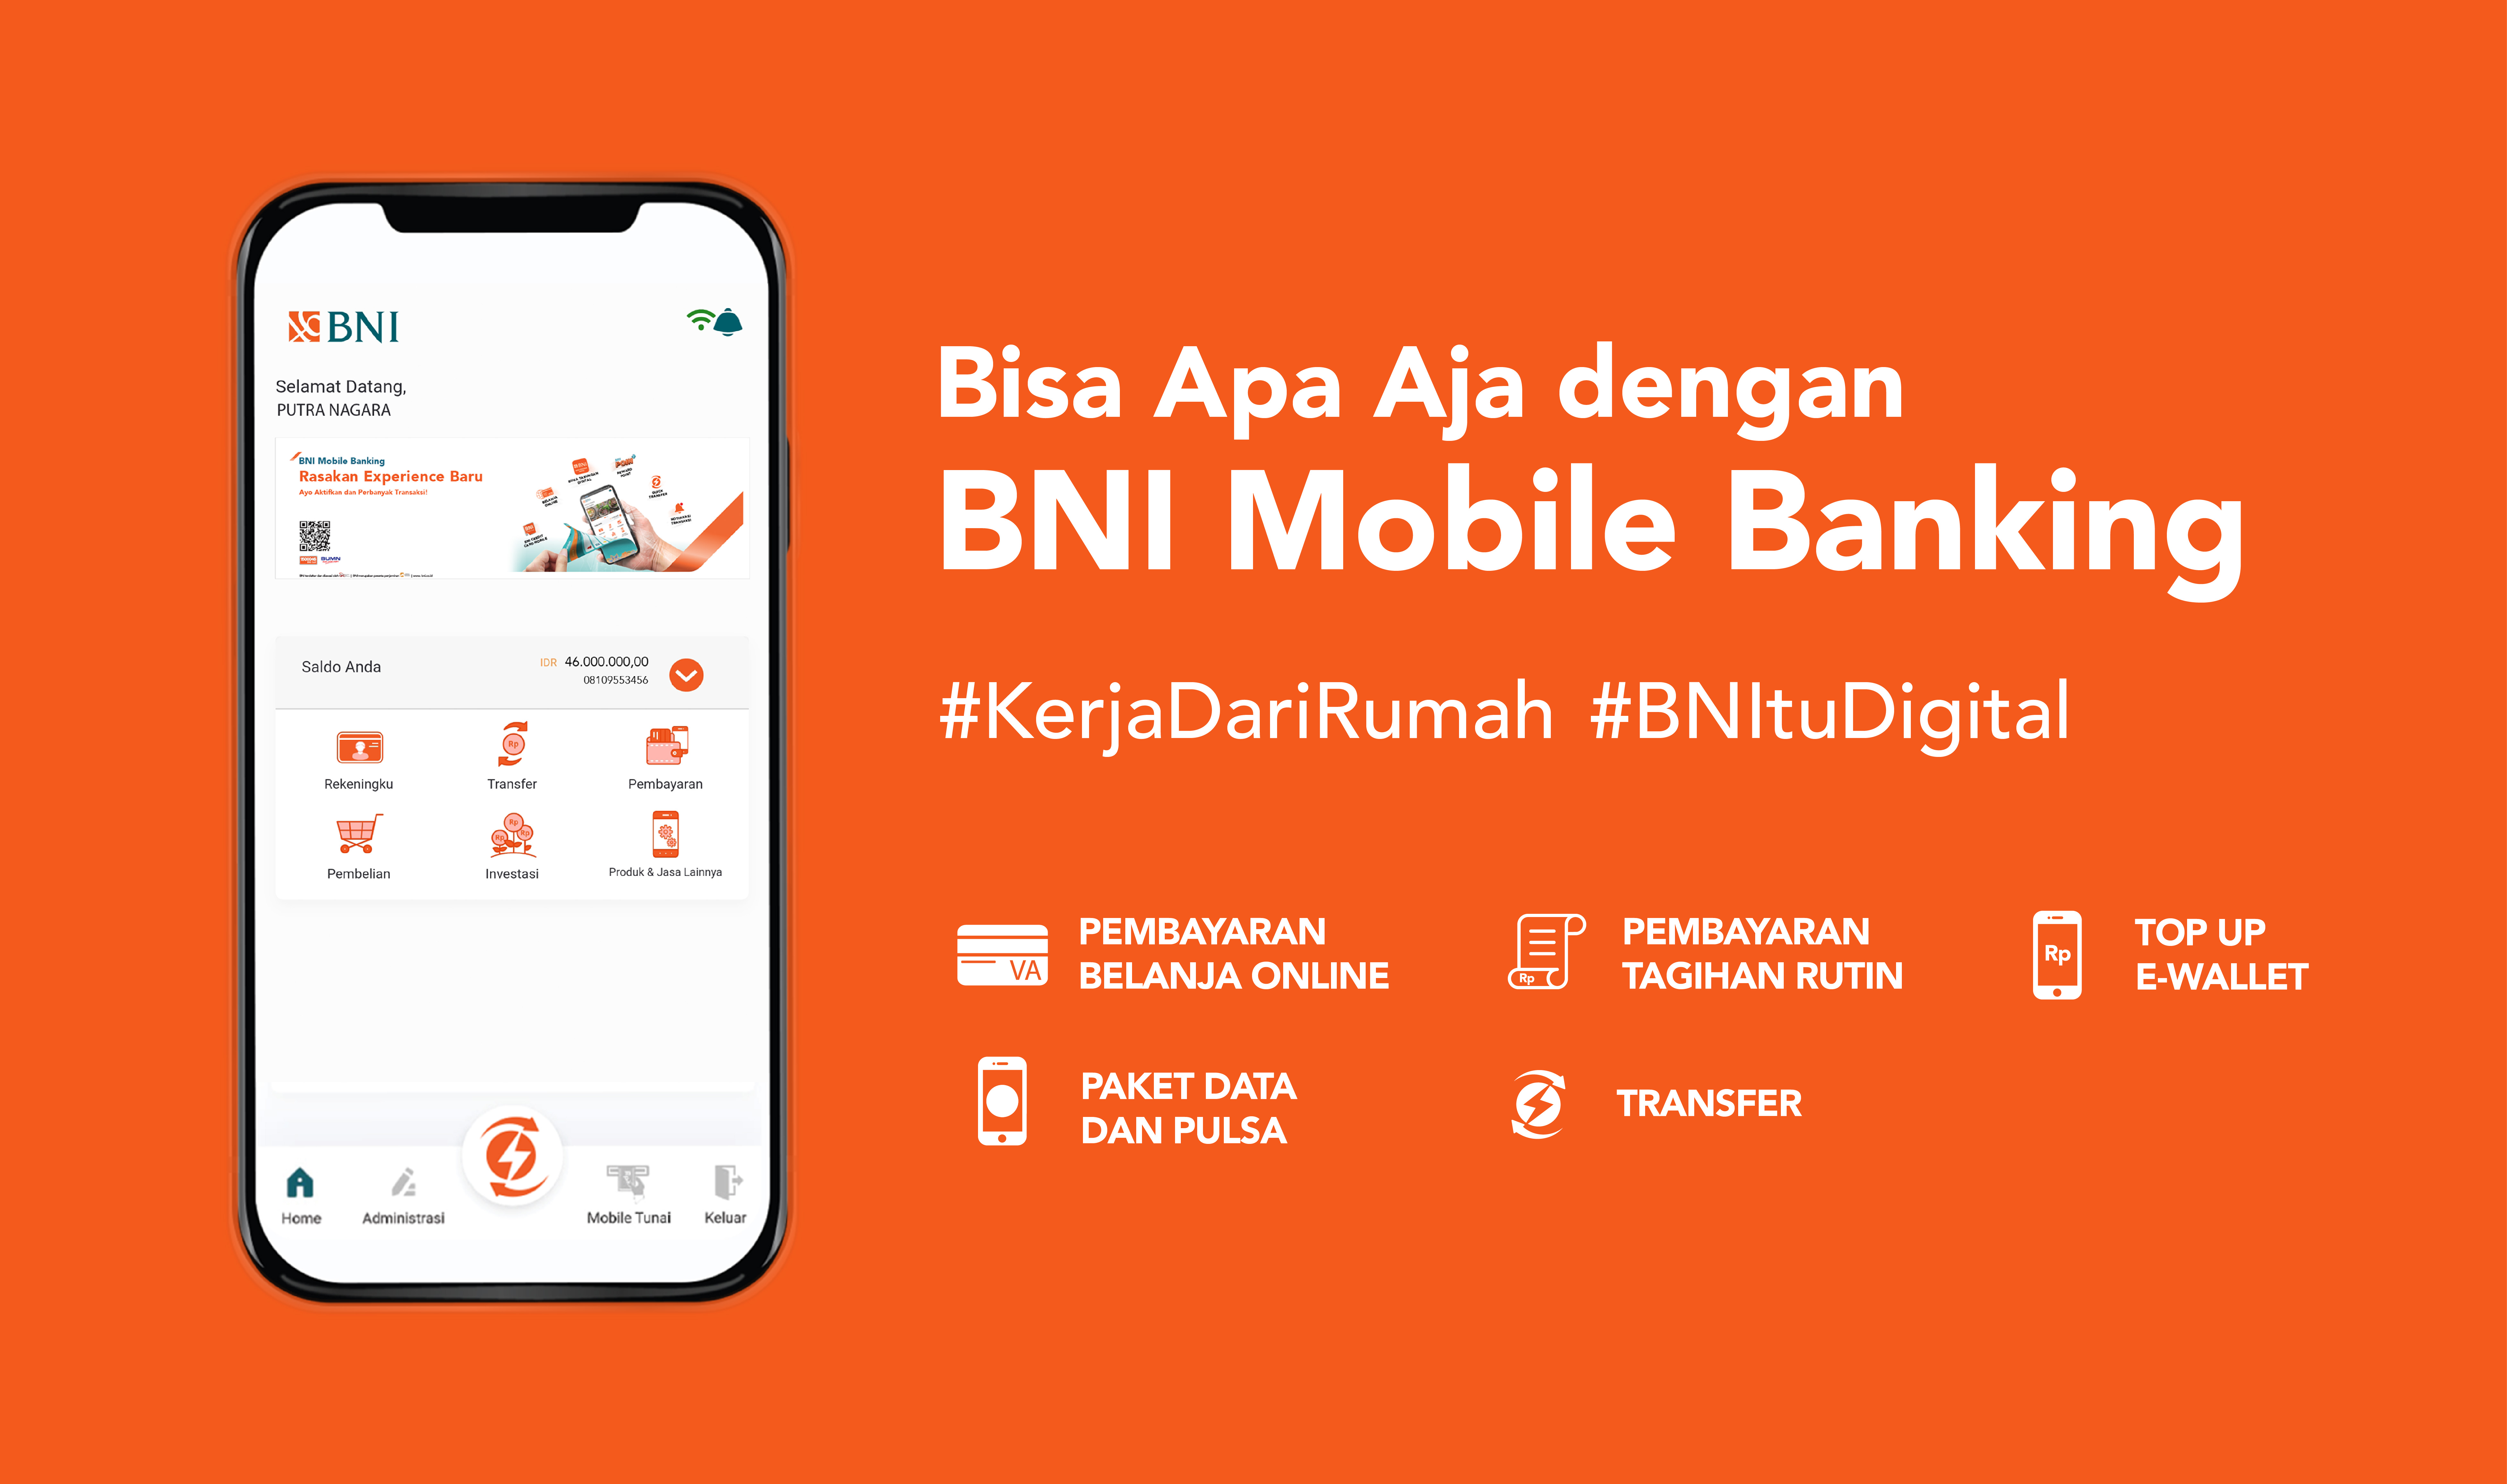 Bisa Apa Aja dengan BNI Mobile Banking